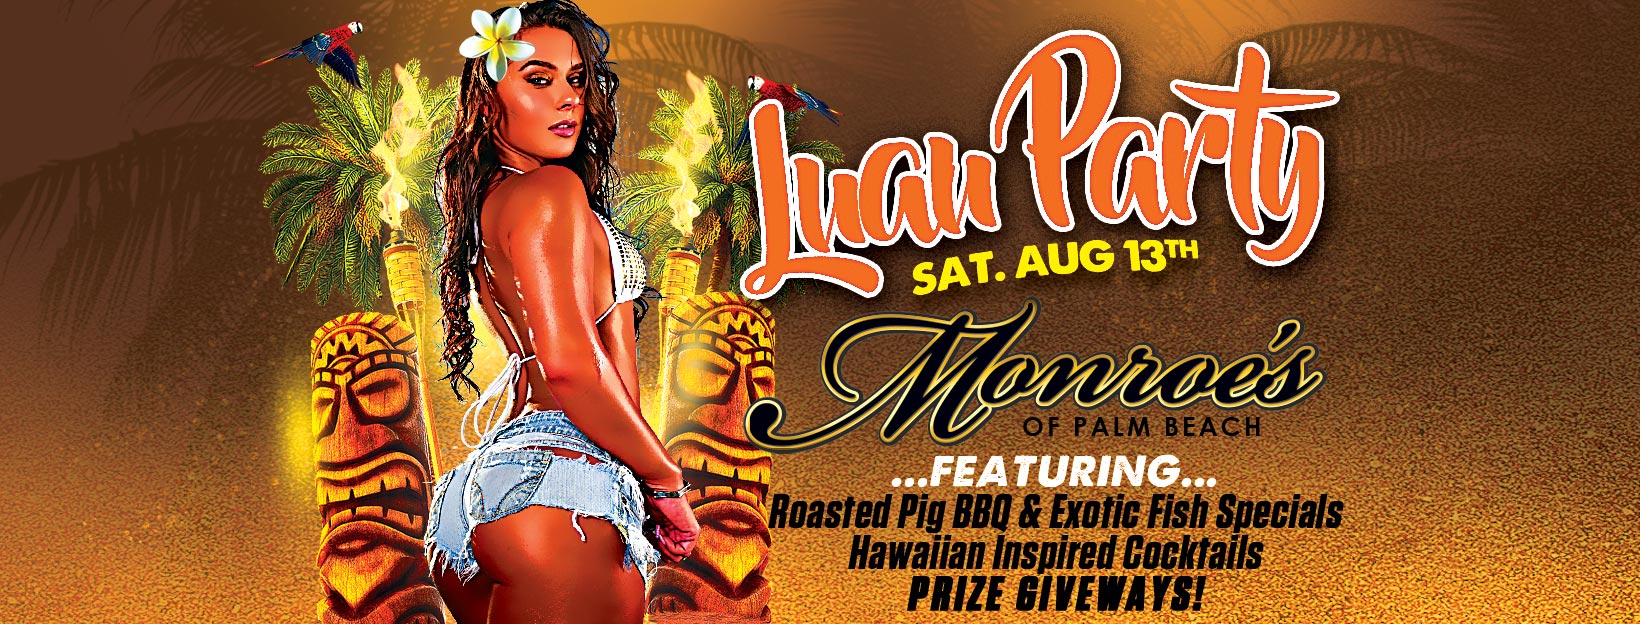 Luau Party at Monroe's Palm Beach